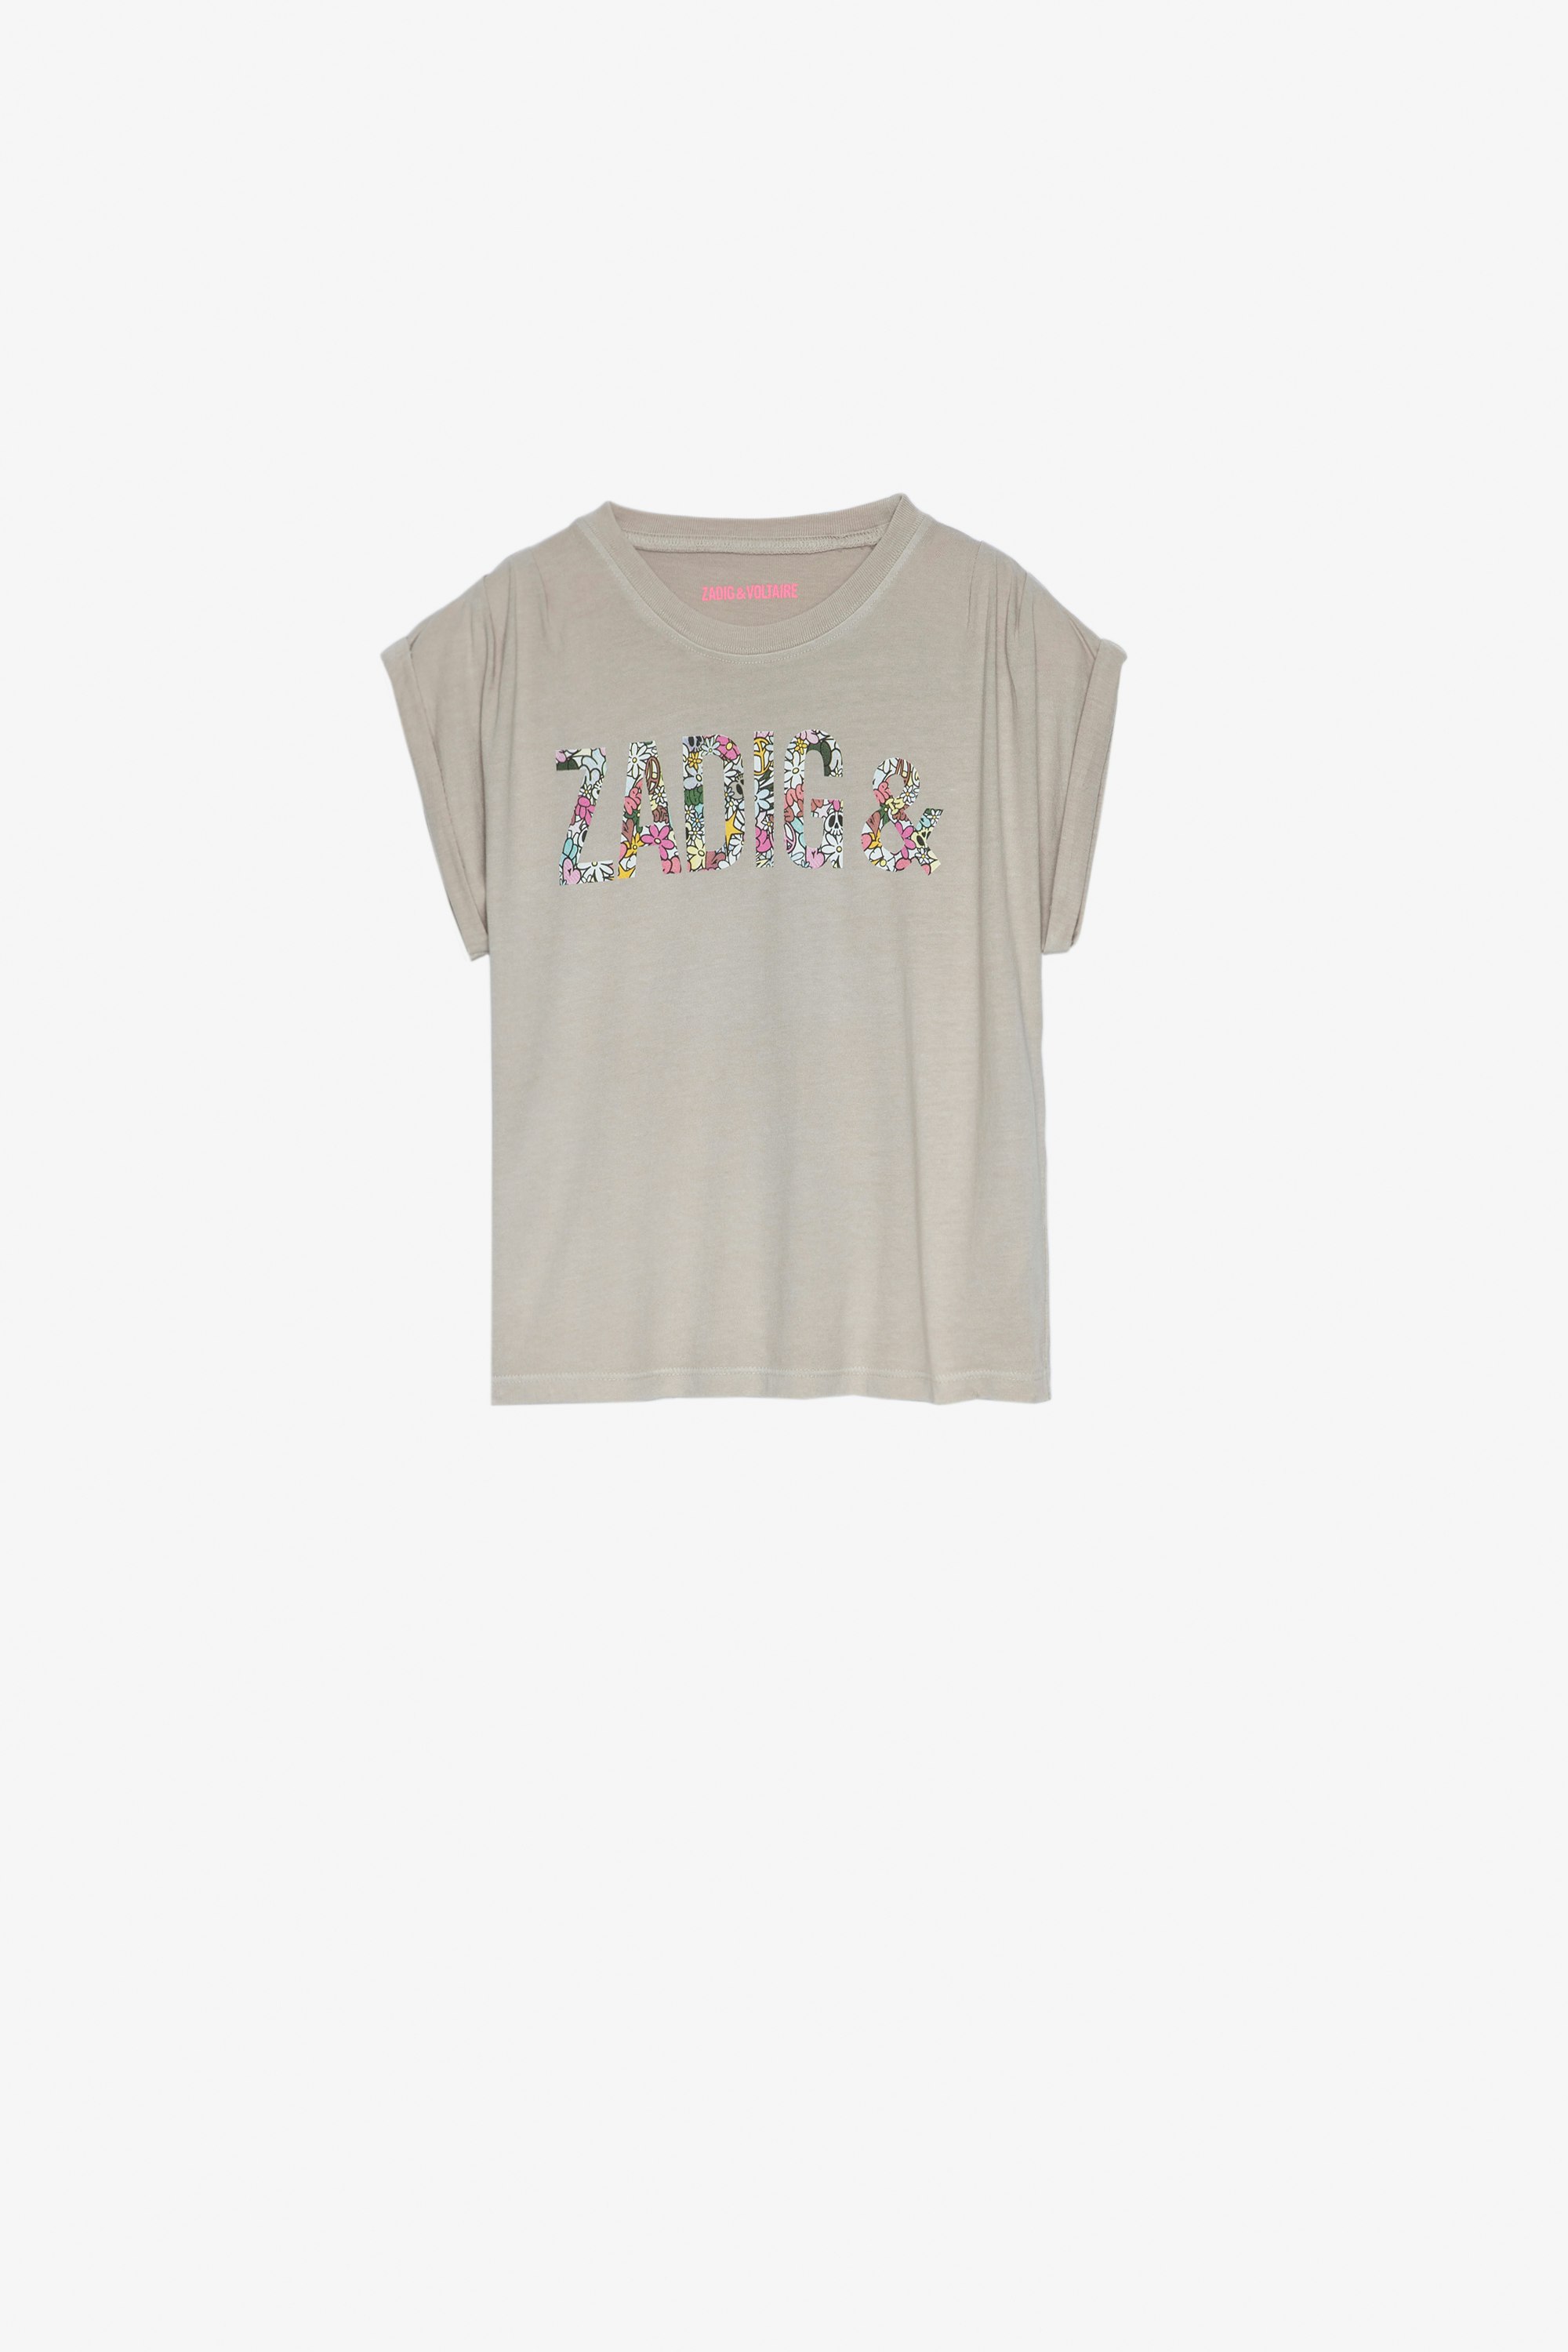 Kinder-T-Shirt Anie Ärmelloses Kinder-T-Shirt aus brauner Baumwolle mit aufgedruckter ZV-Signatur